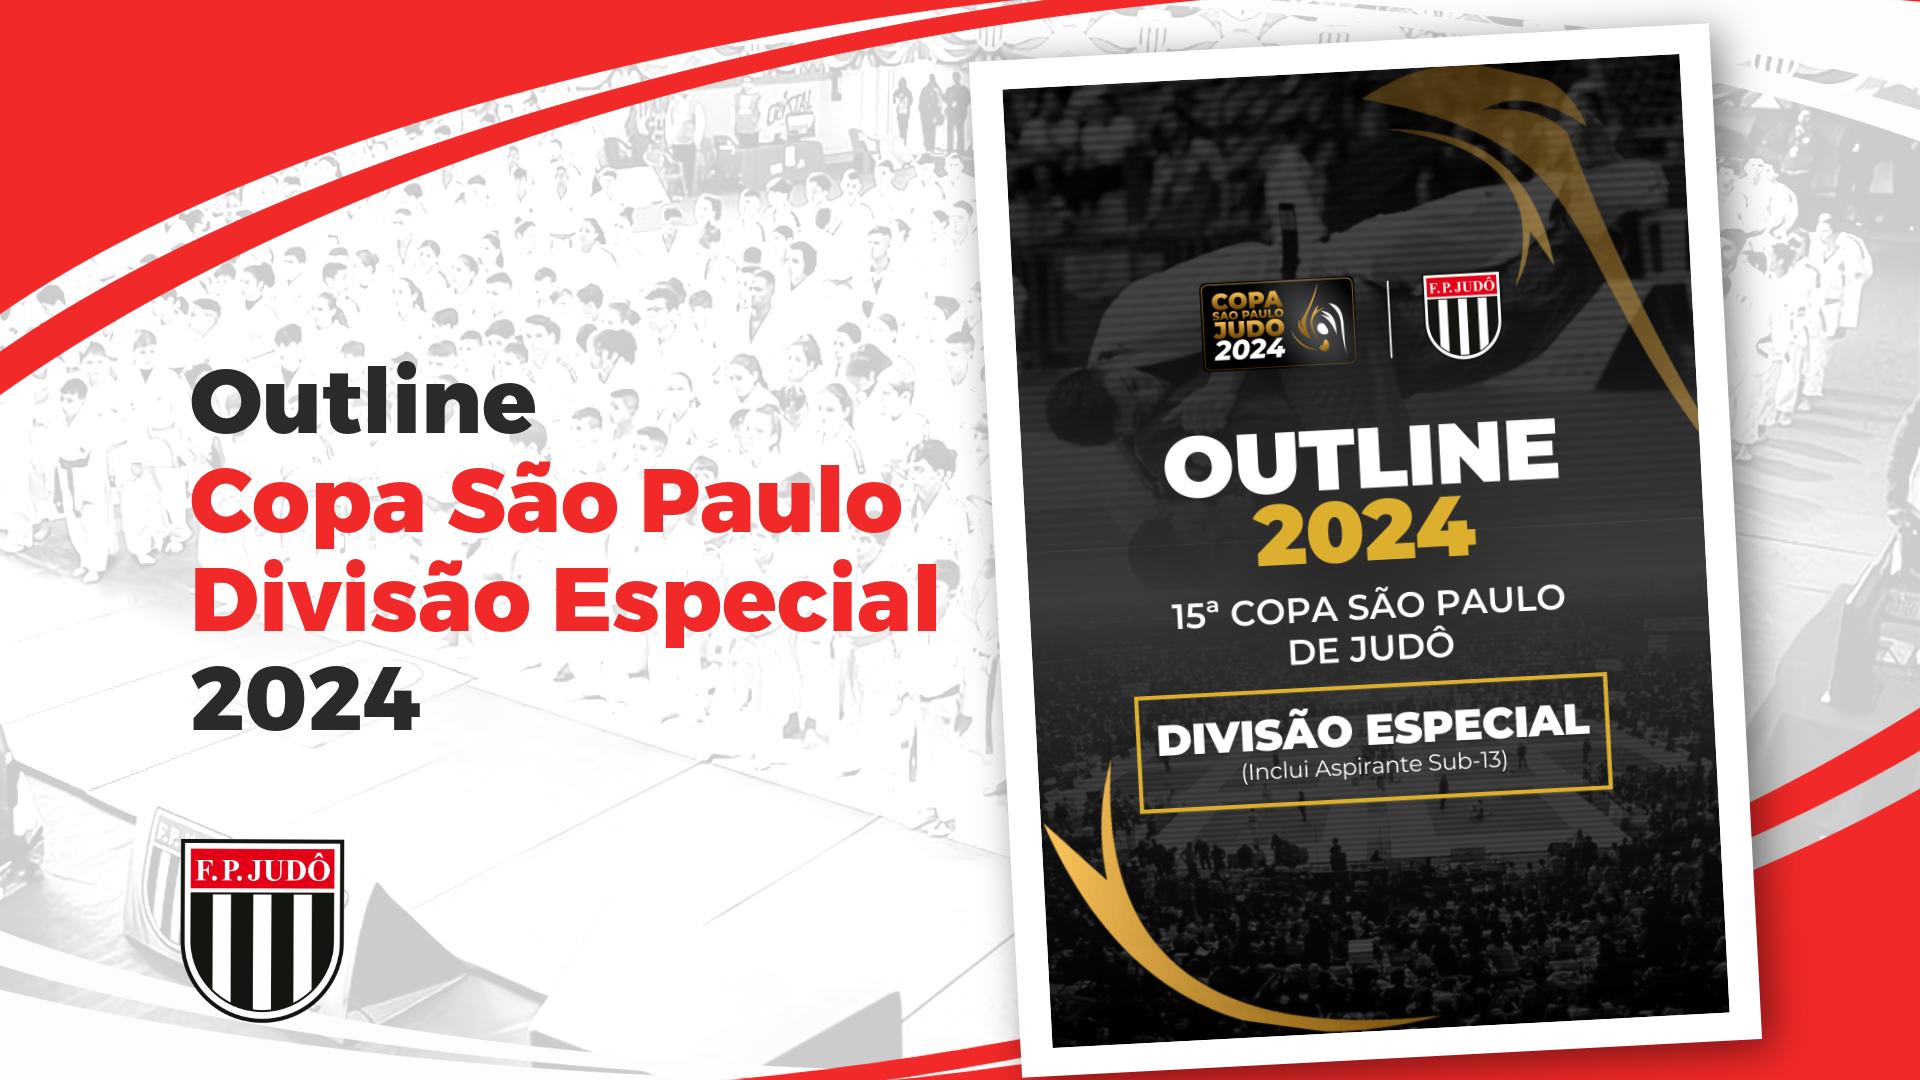 Outline Copa São Paulo 2024 - Div. Especial